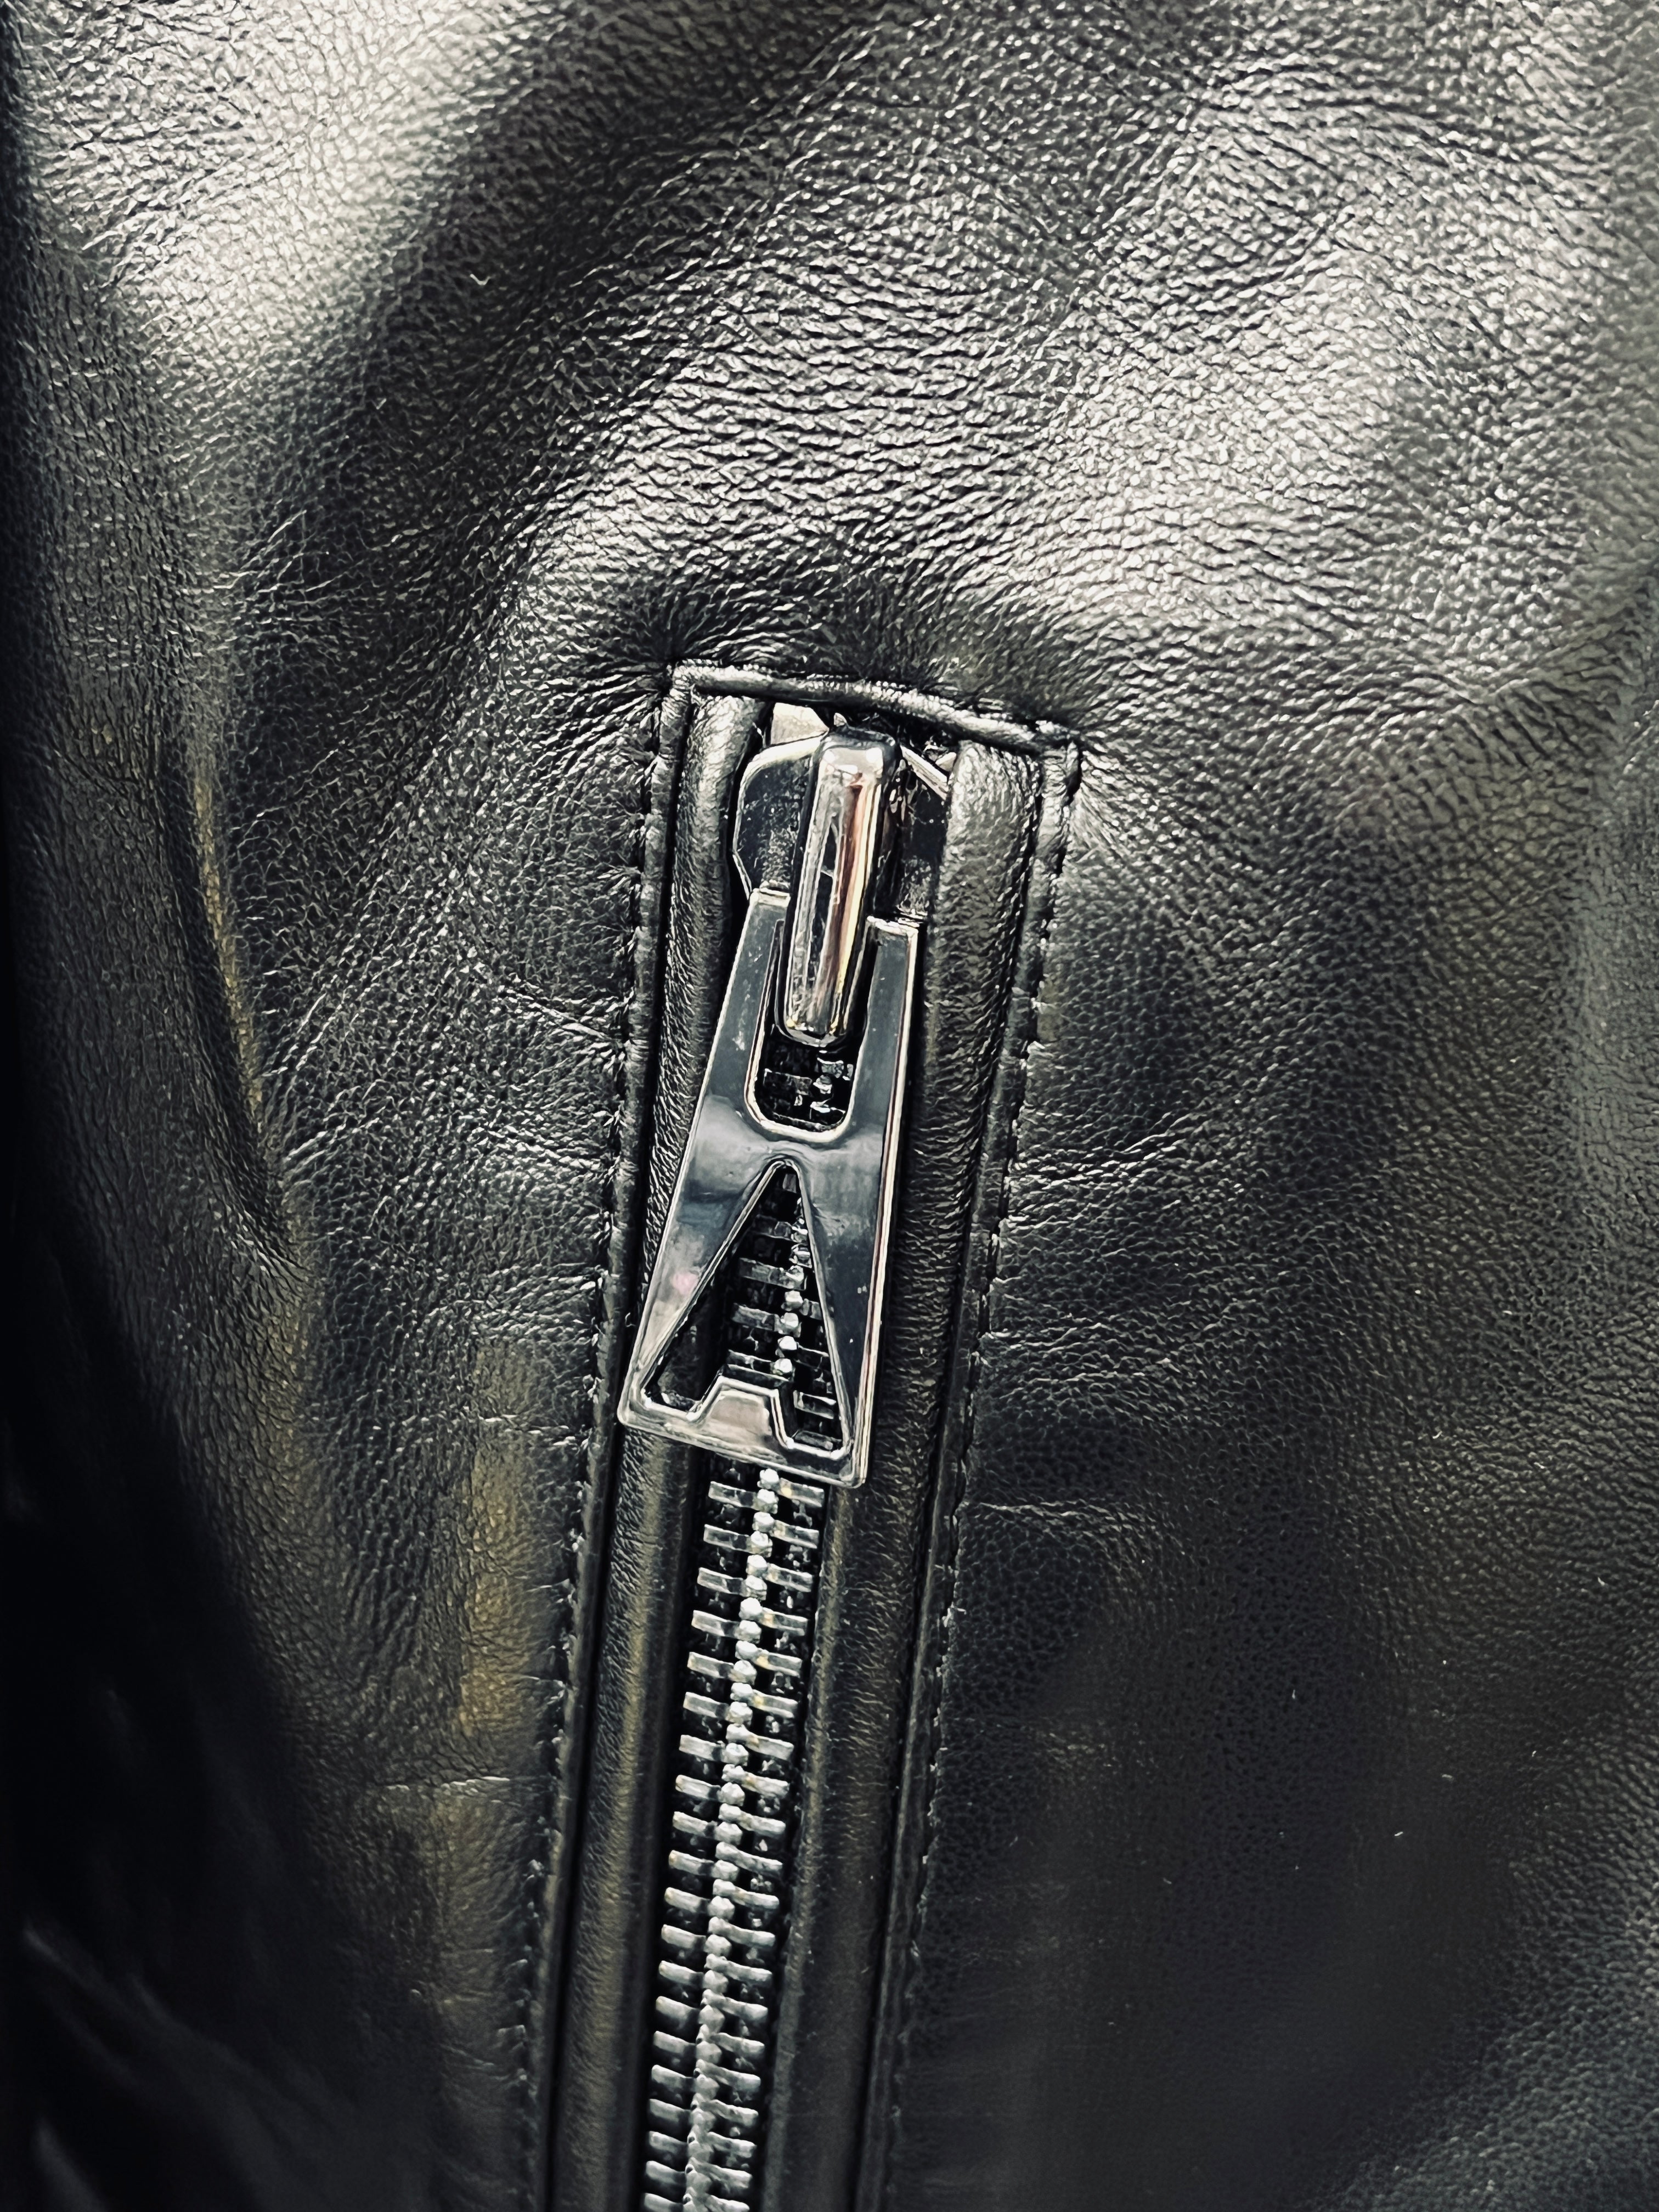 Ahirain Leather Biker Jacket